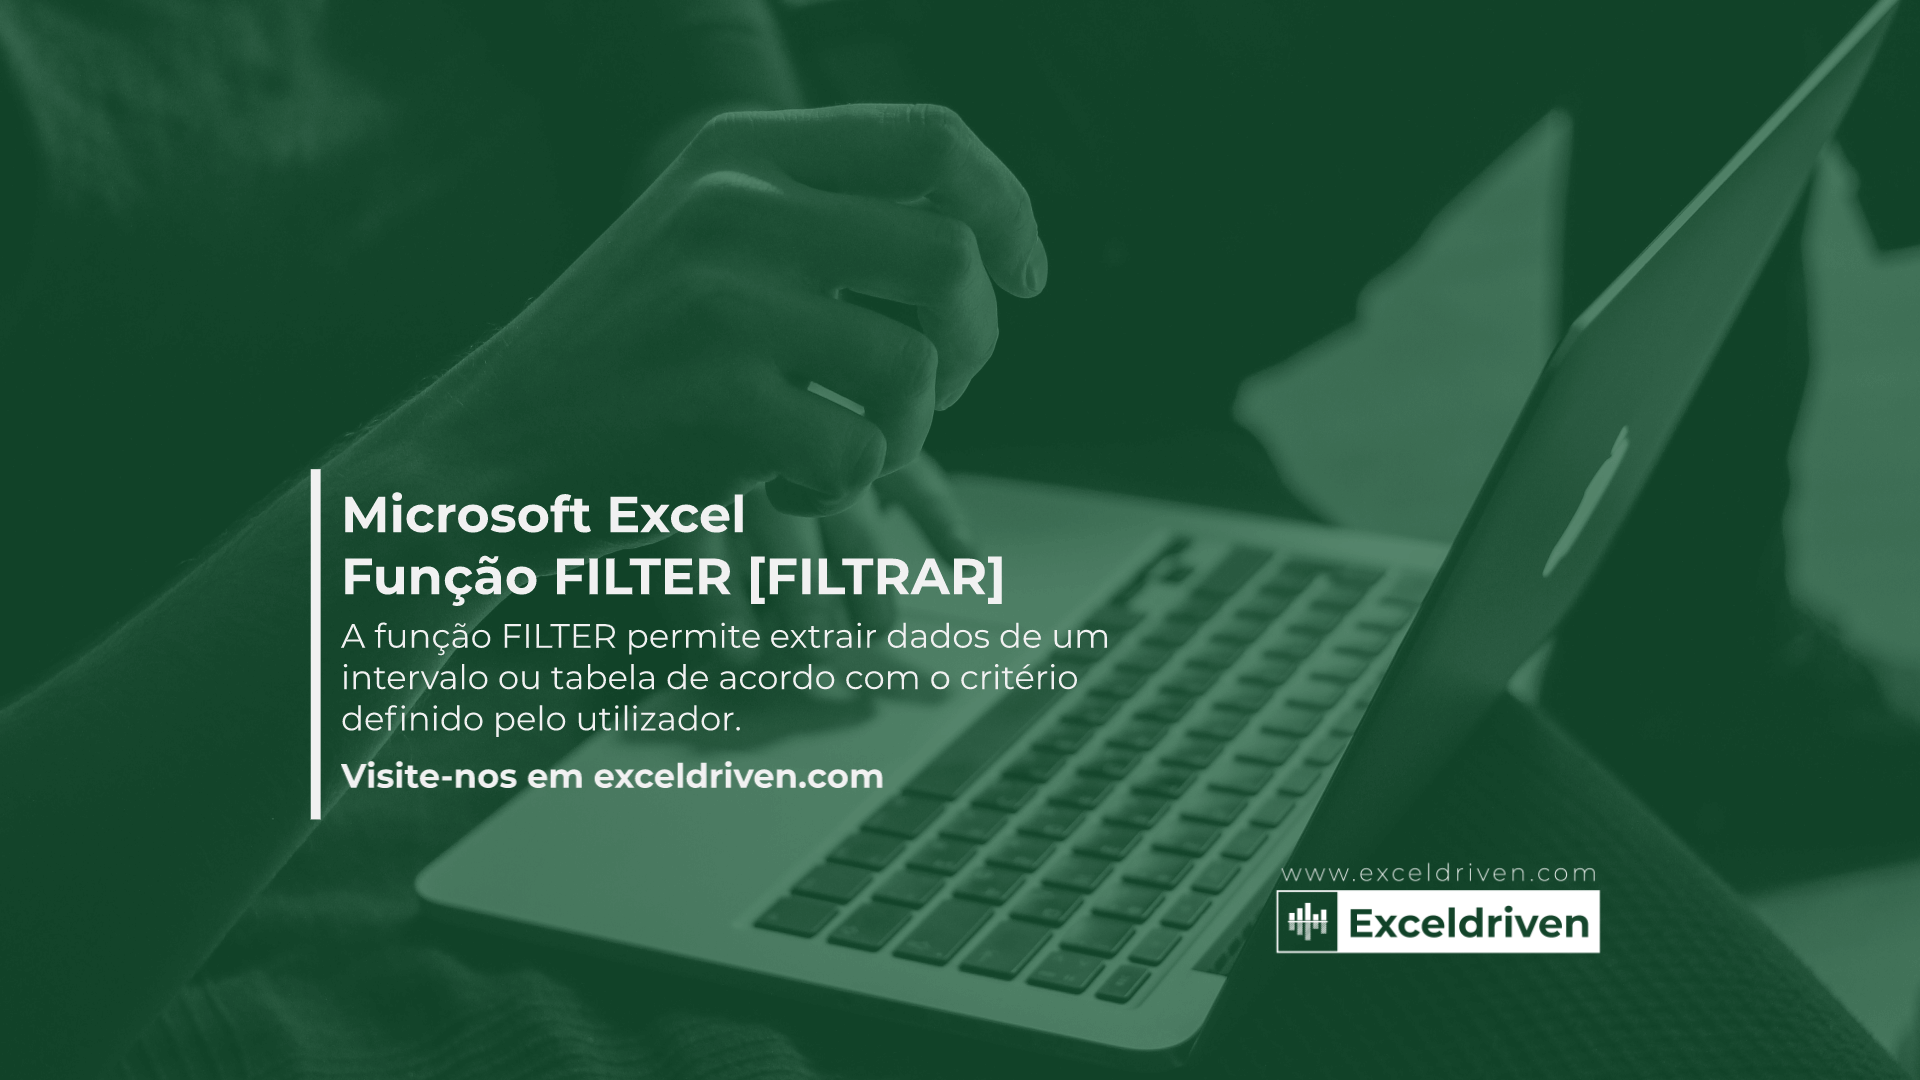 Microsoft Excel - Função FILTER [FILTRAR]